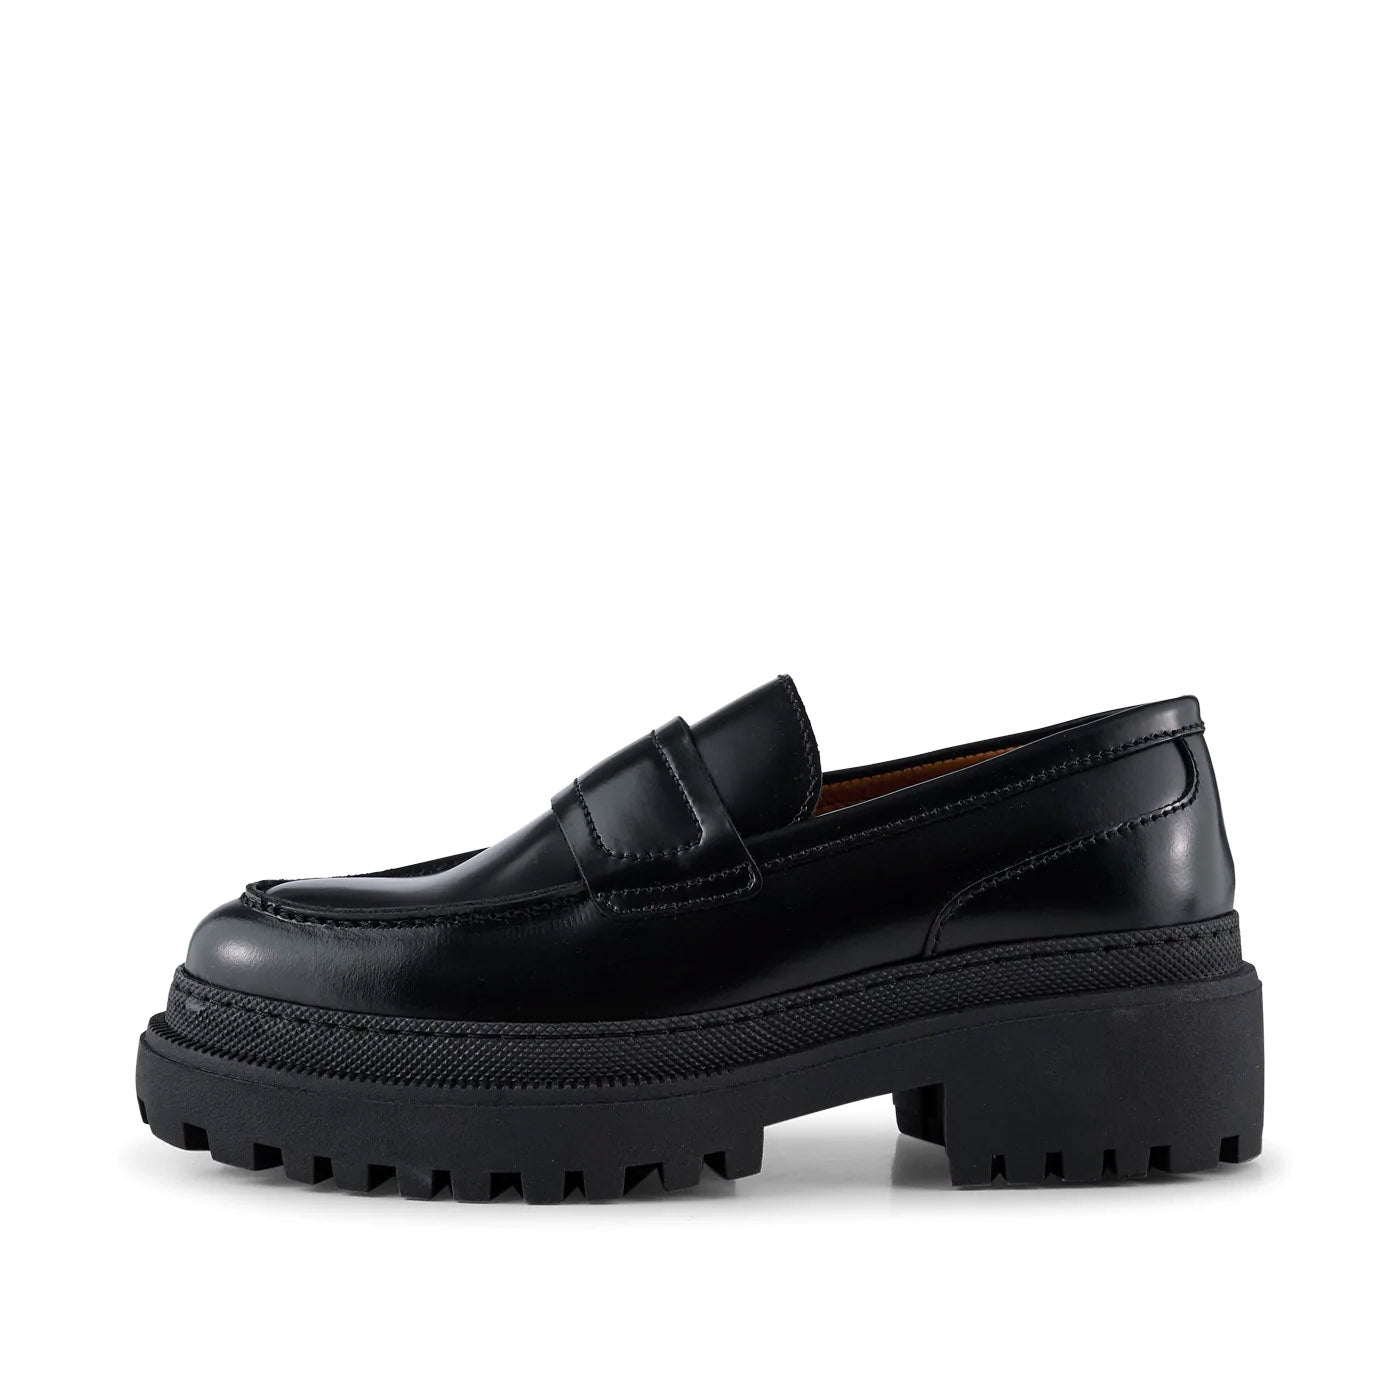 Iona loafer leather - BLACK POLIDO HIGH SHINE – SHOE THE BEAR - COM